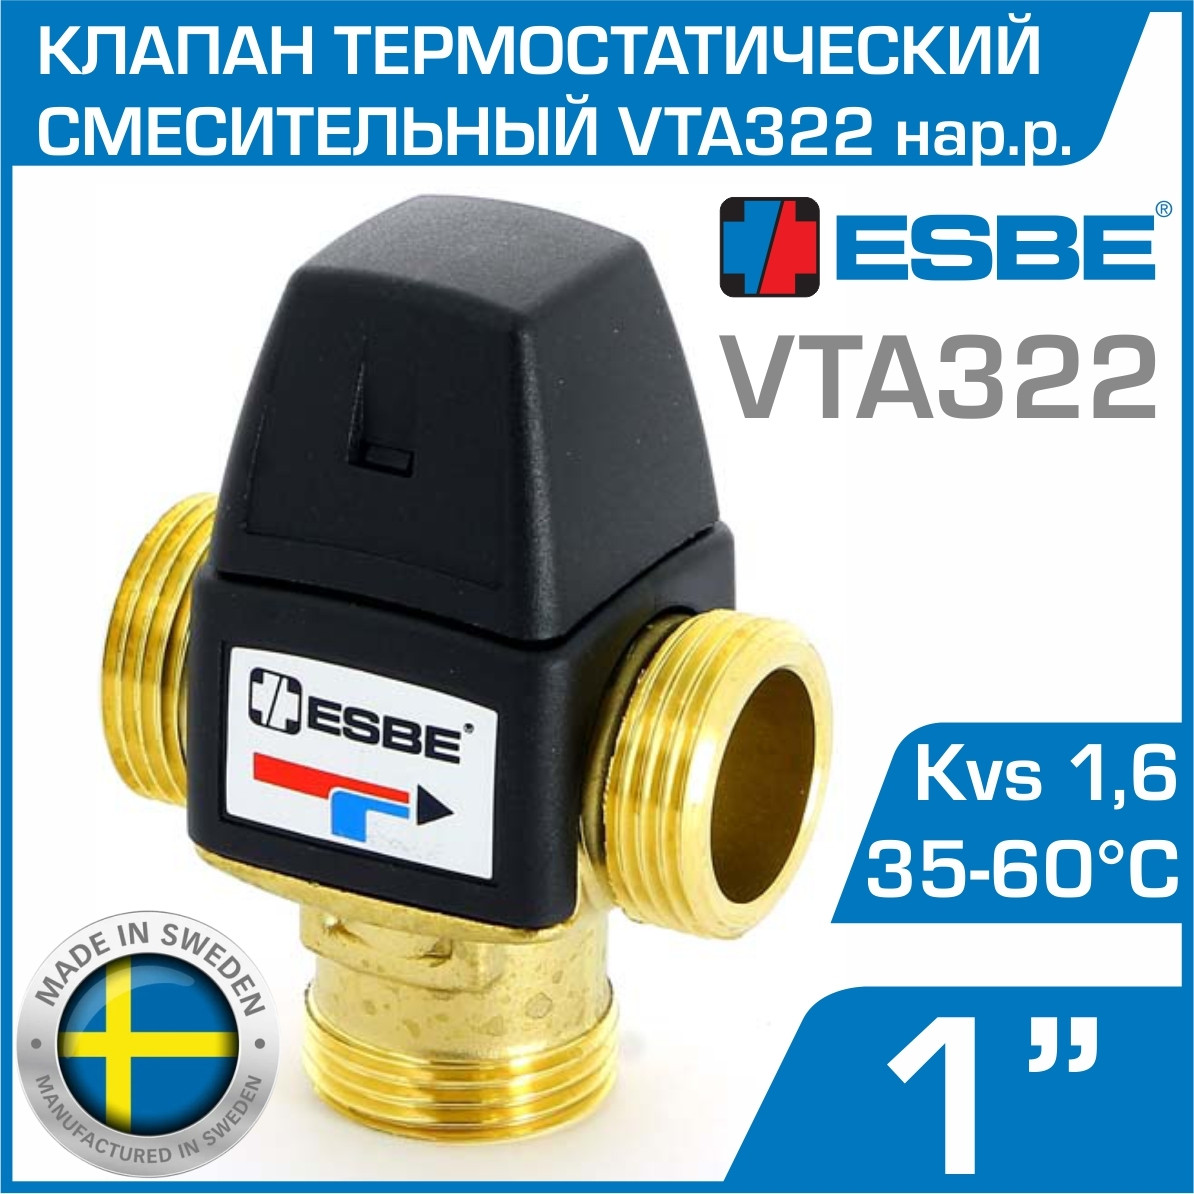 Термостатический смесительный клапан ESBE VTA322 35-60°C, Kvs 1,6 нар. р.